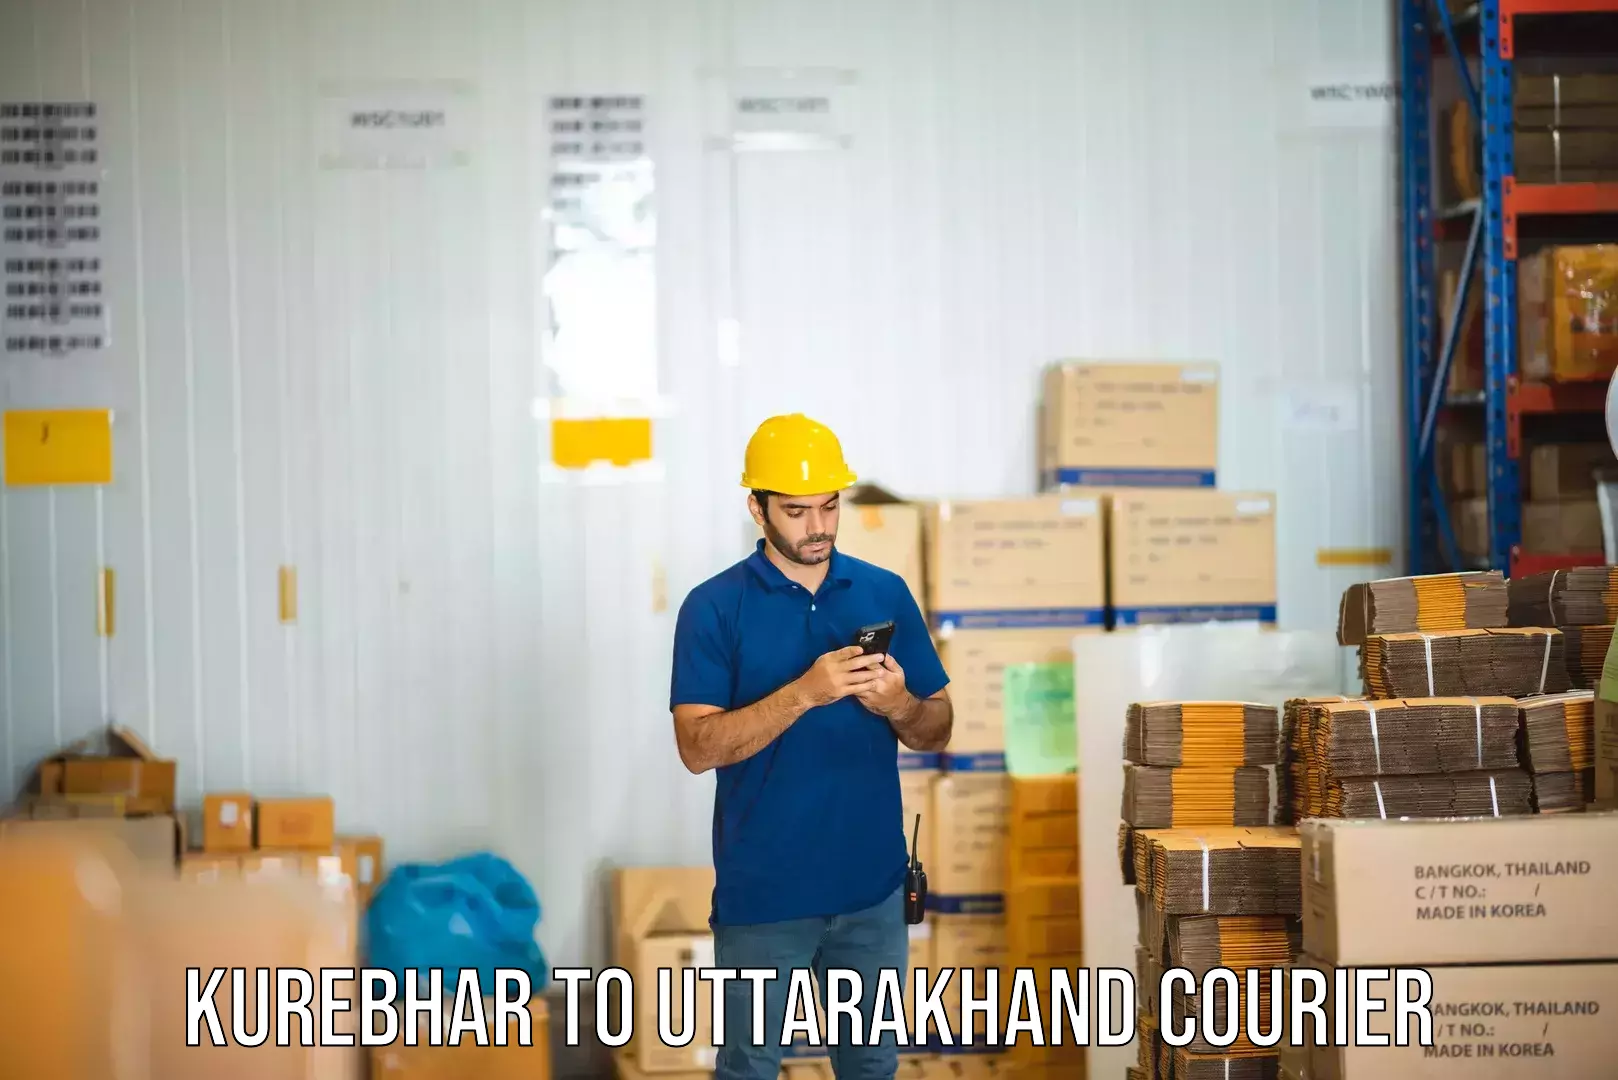 Reliable courier service Kurebhar to Uttarakhand